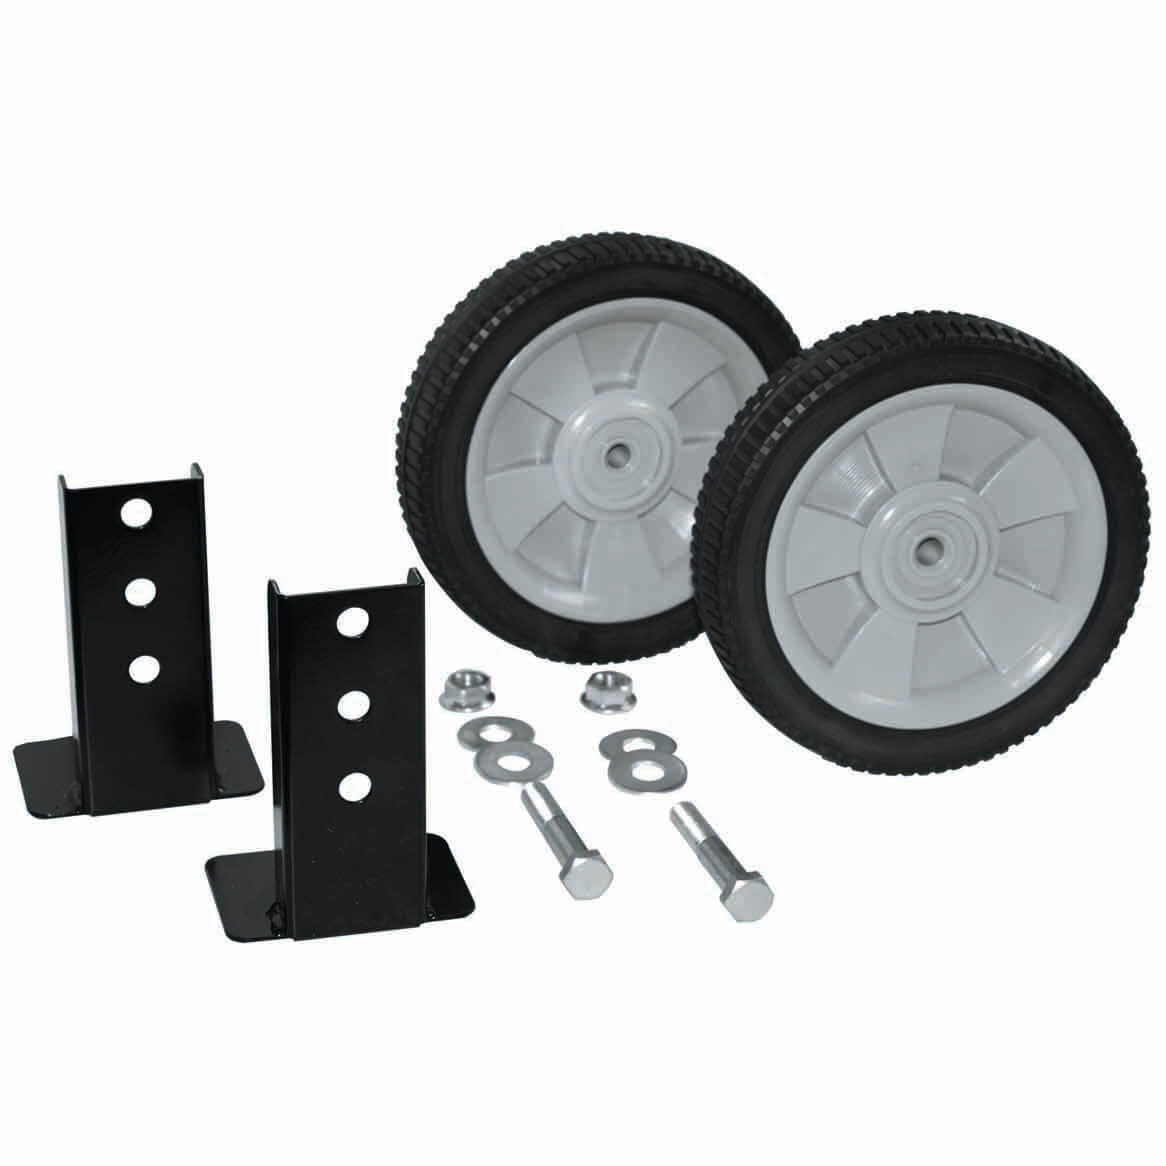 Van Mark UniLeg Adjustable Wheel Kit